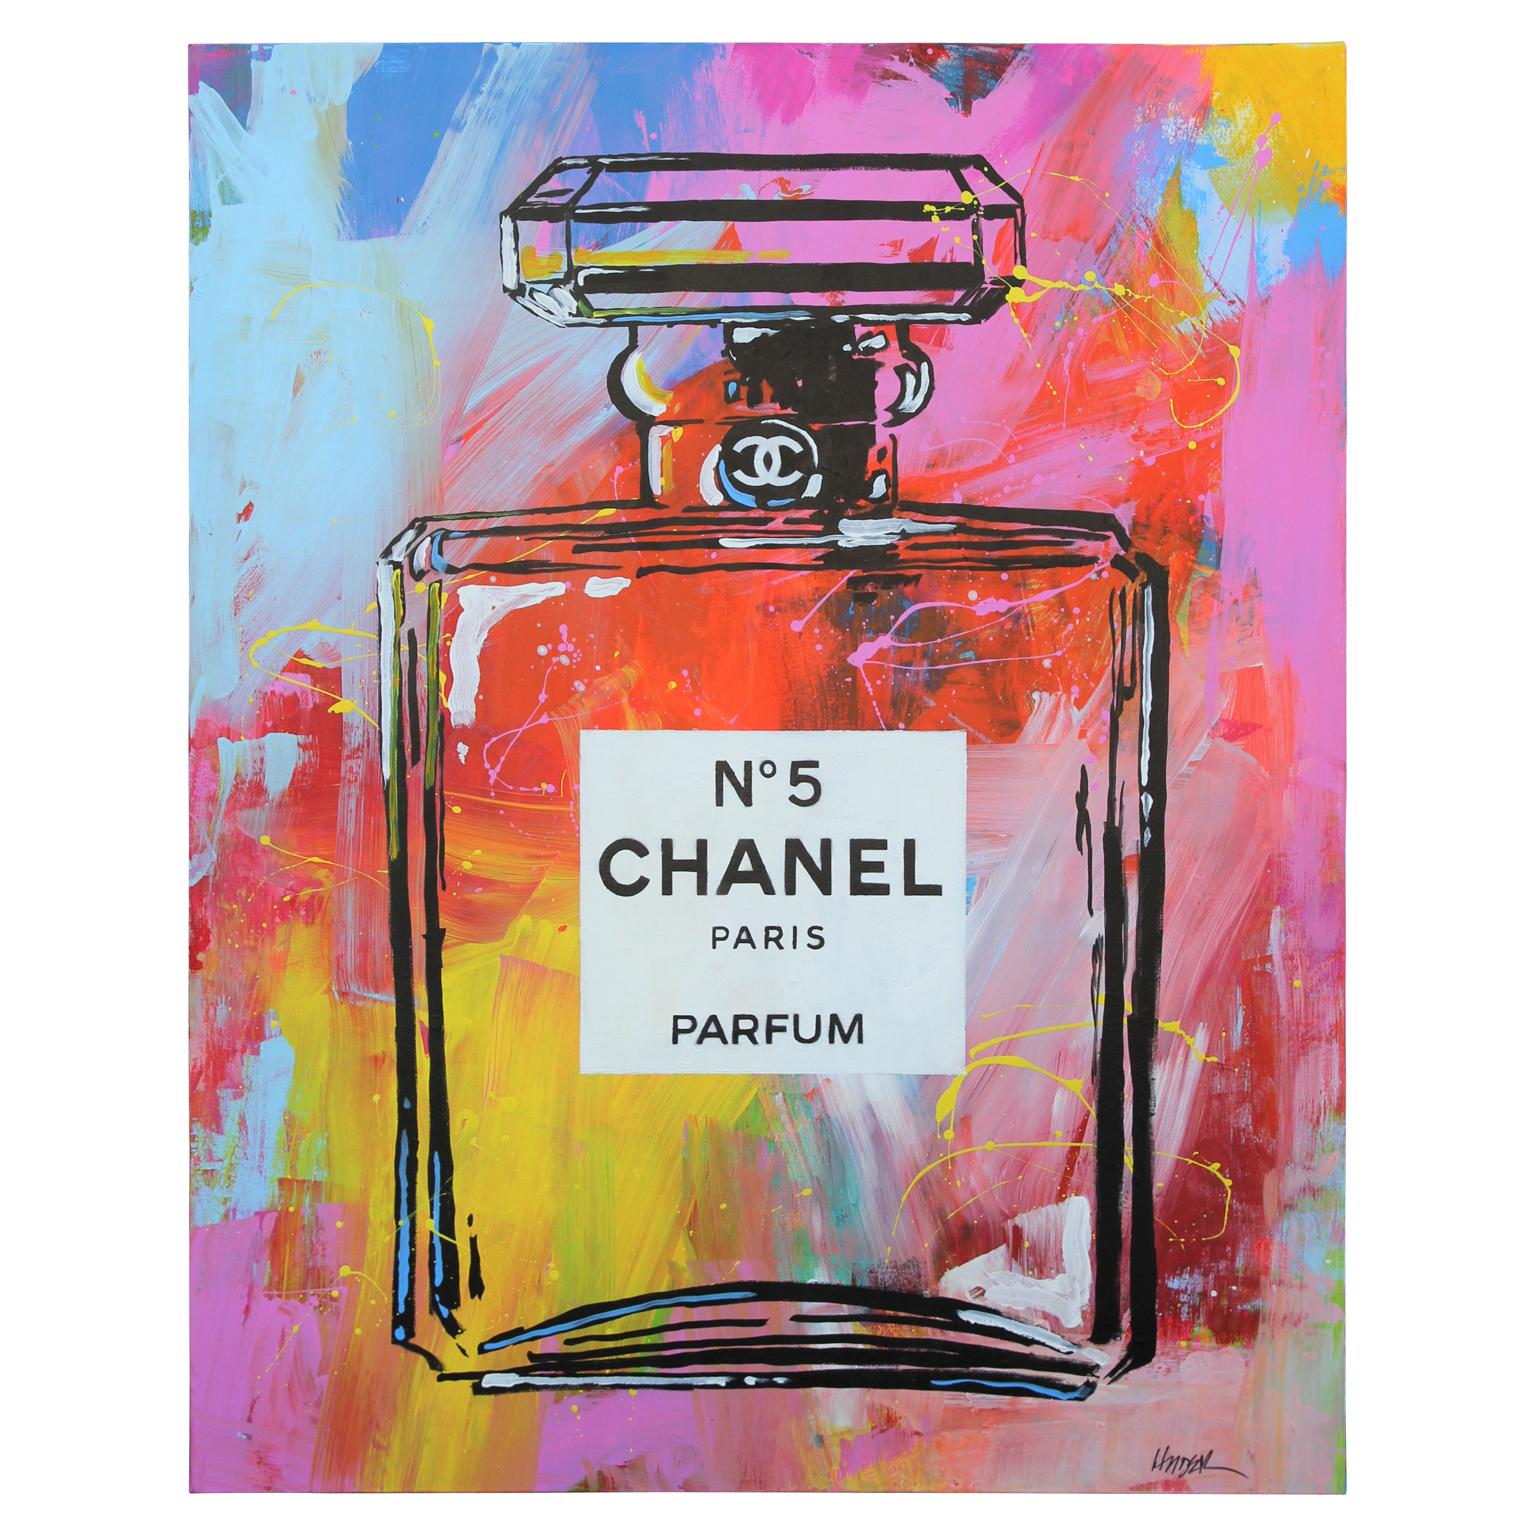 Jim Hudek - Chanel No.5 #1 Colorful Abstract Paris Parfum Bottle